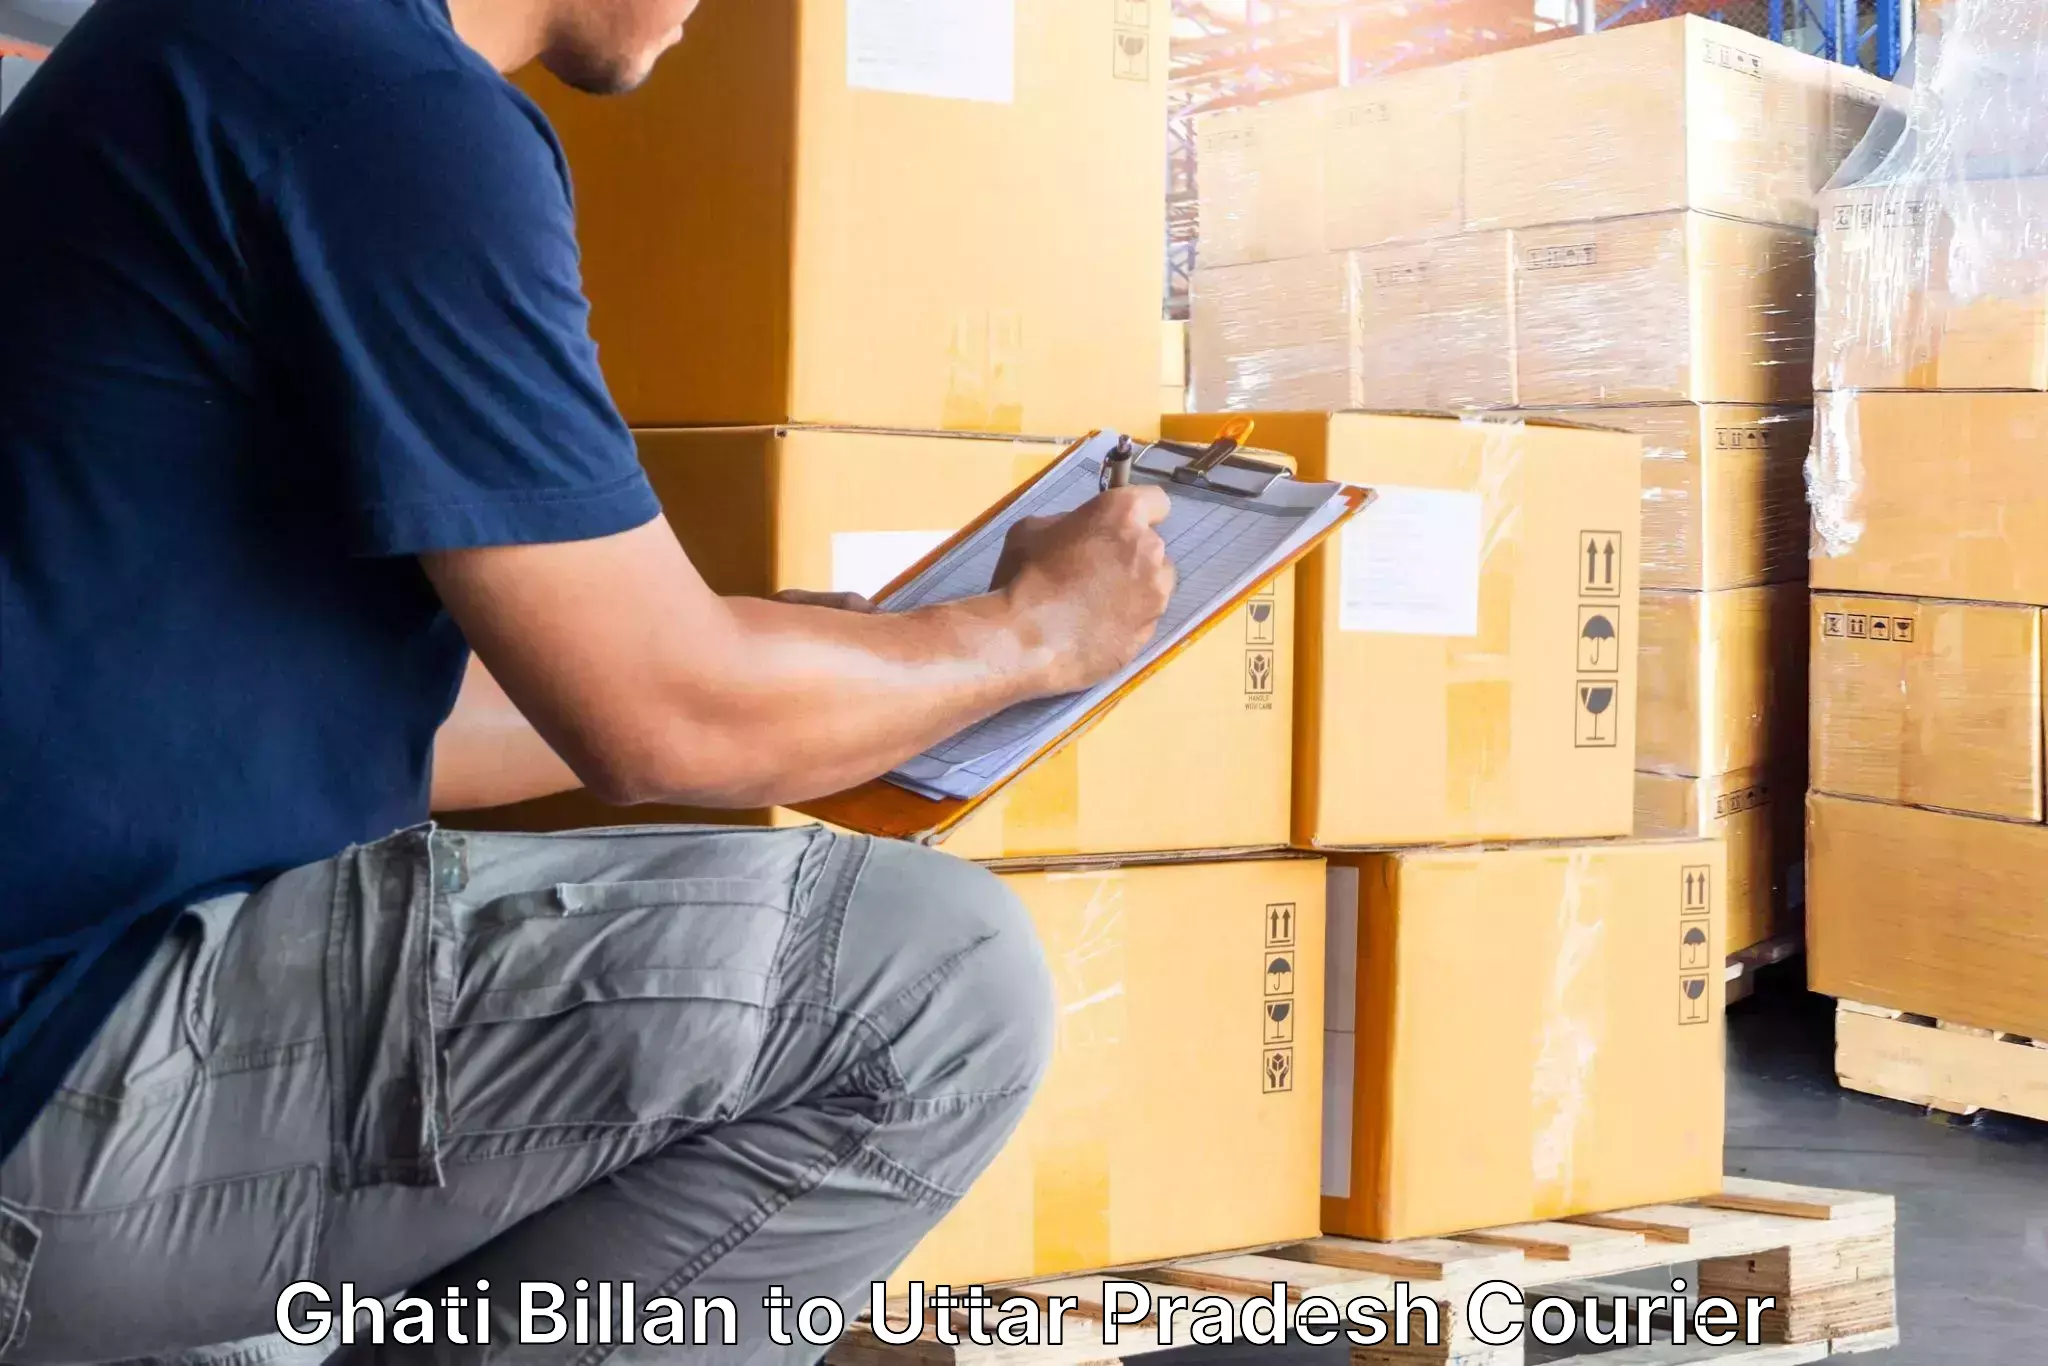 Furniture moving experts Ghati Billan to Kerakat